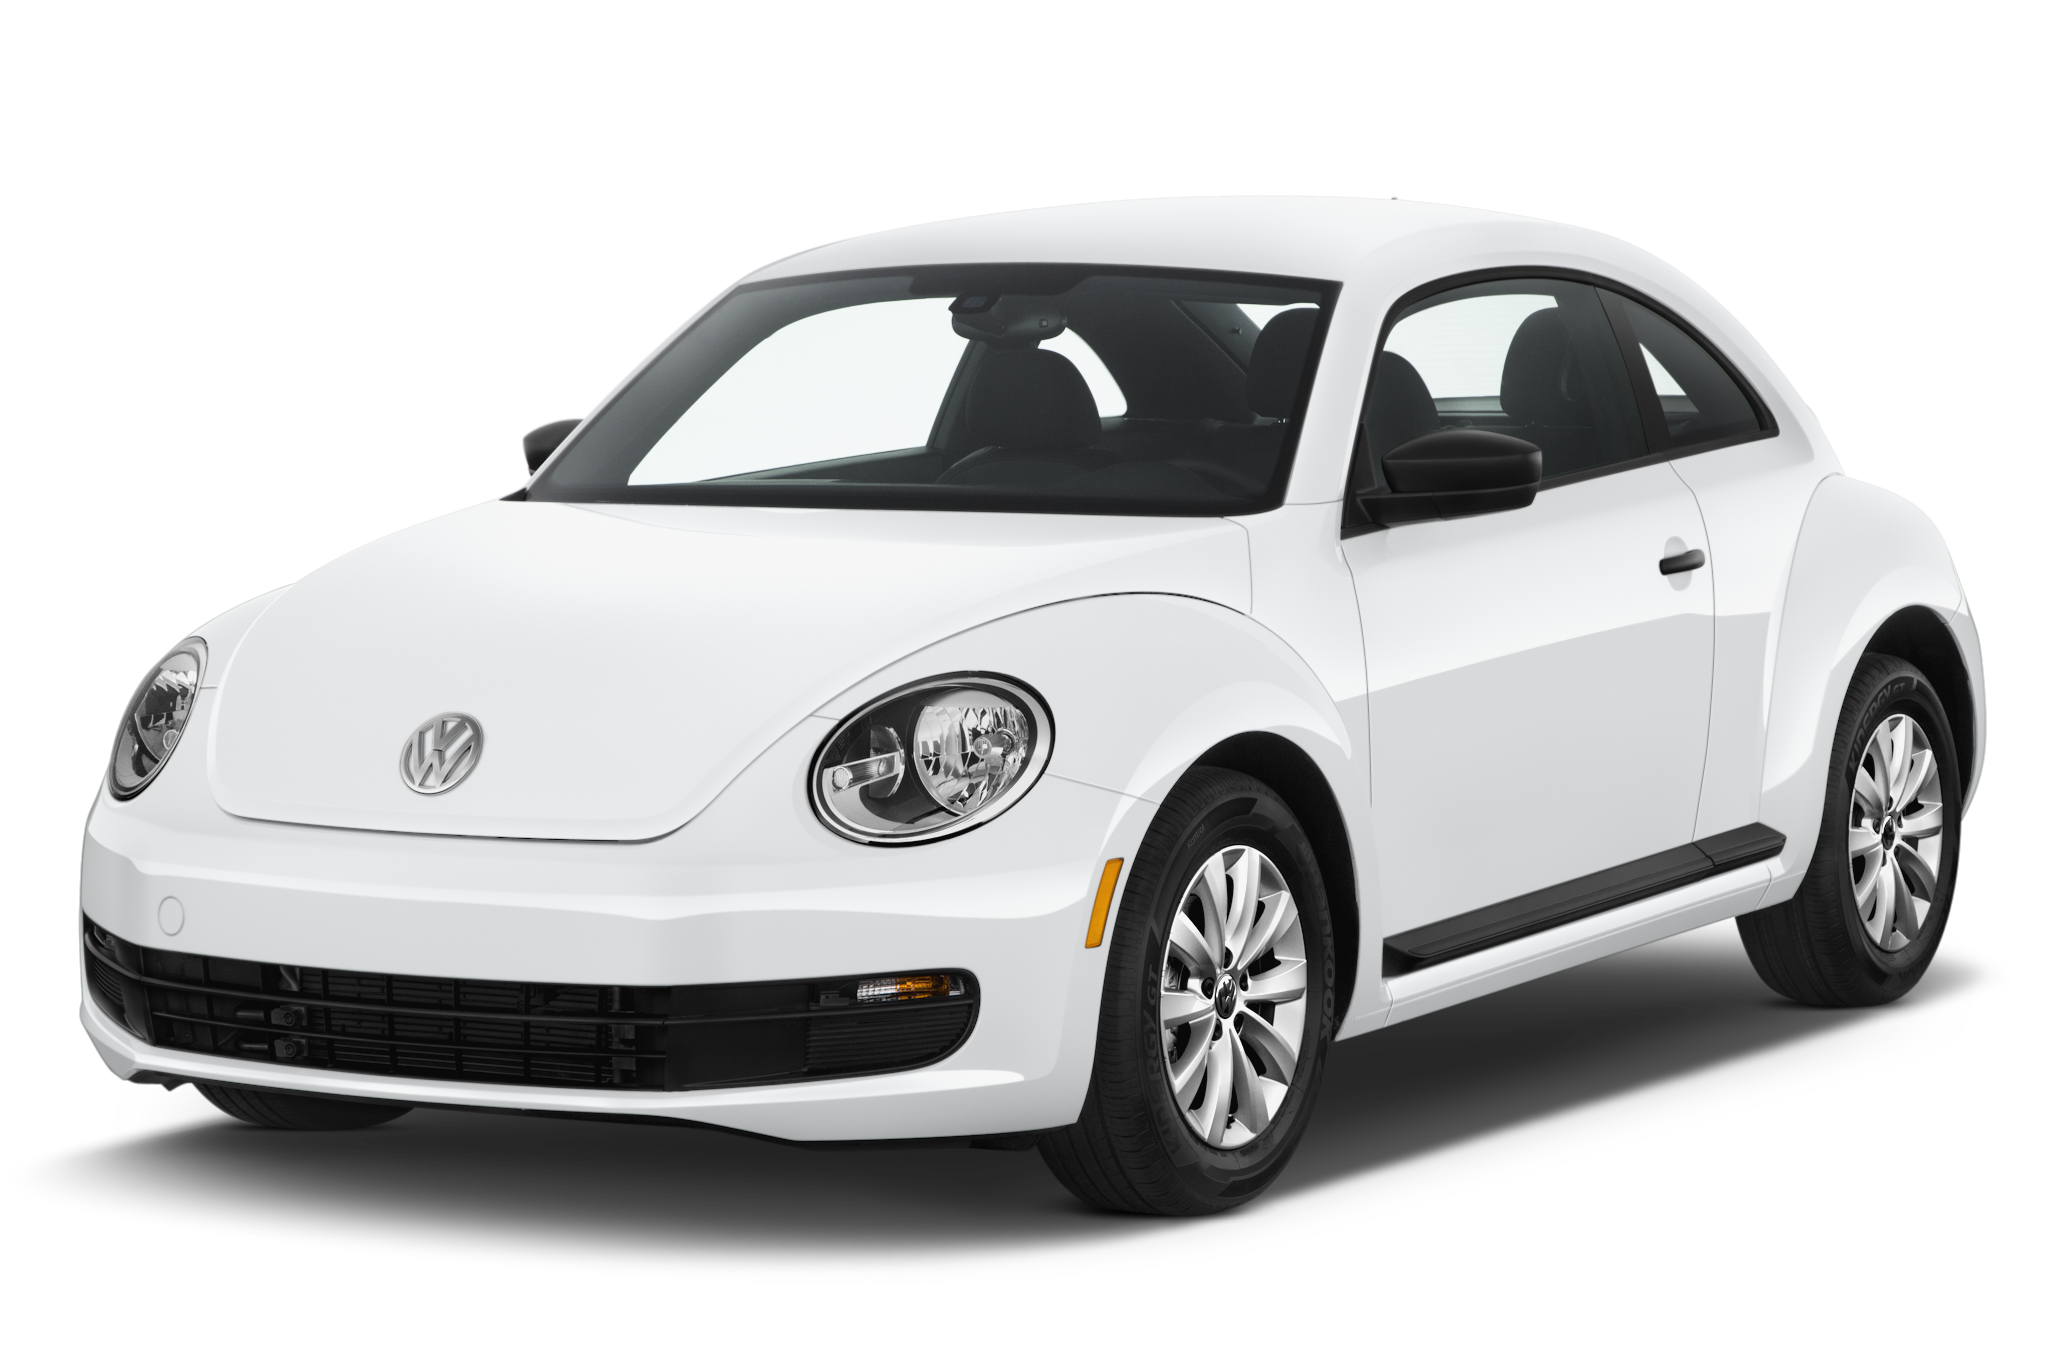 Download PNG image - VW Beetle PNG Transparent Image 